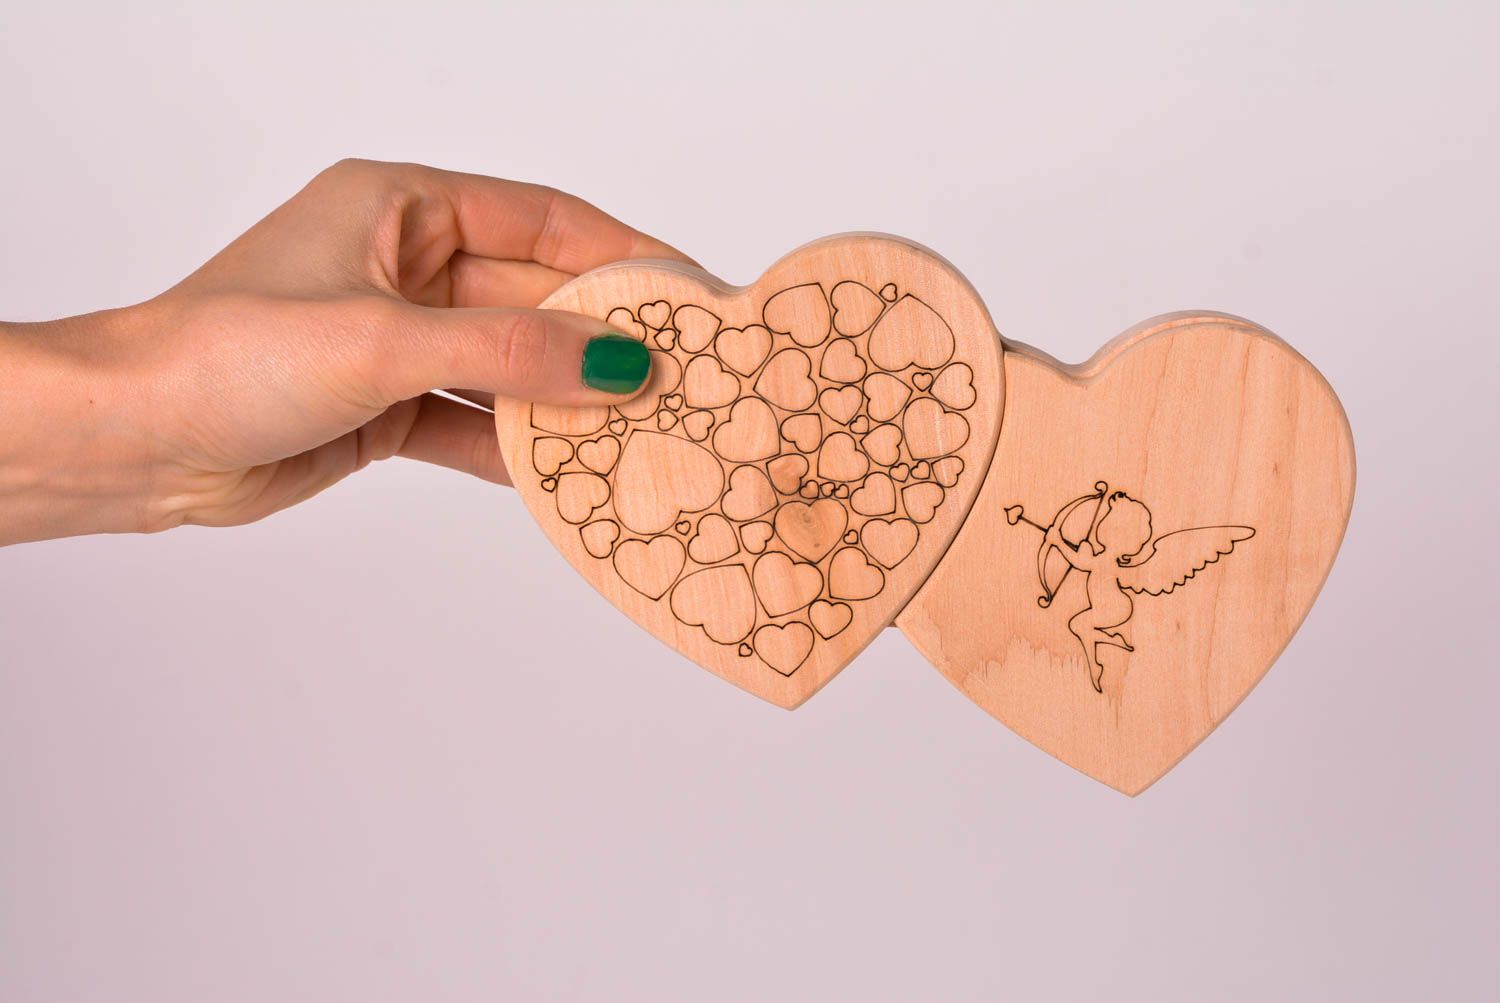 Stylish handmade wooden box wood craft ideas jewelry box design small gifts photo 2